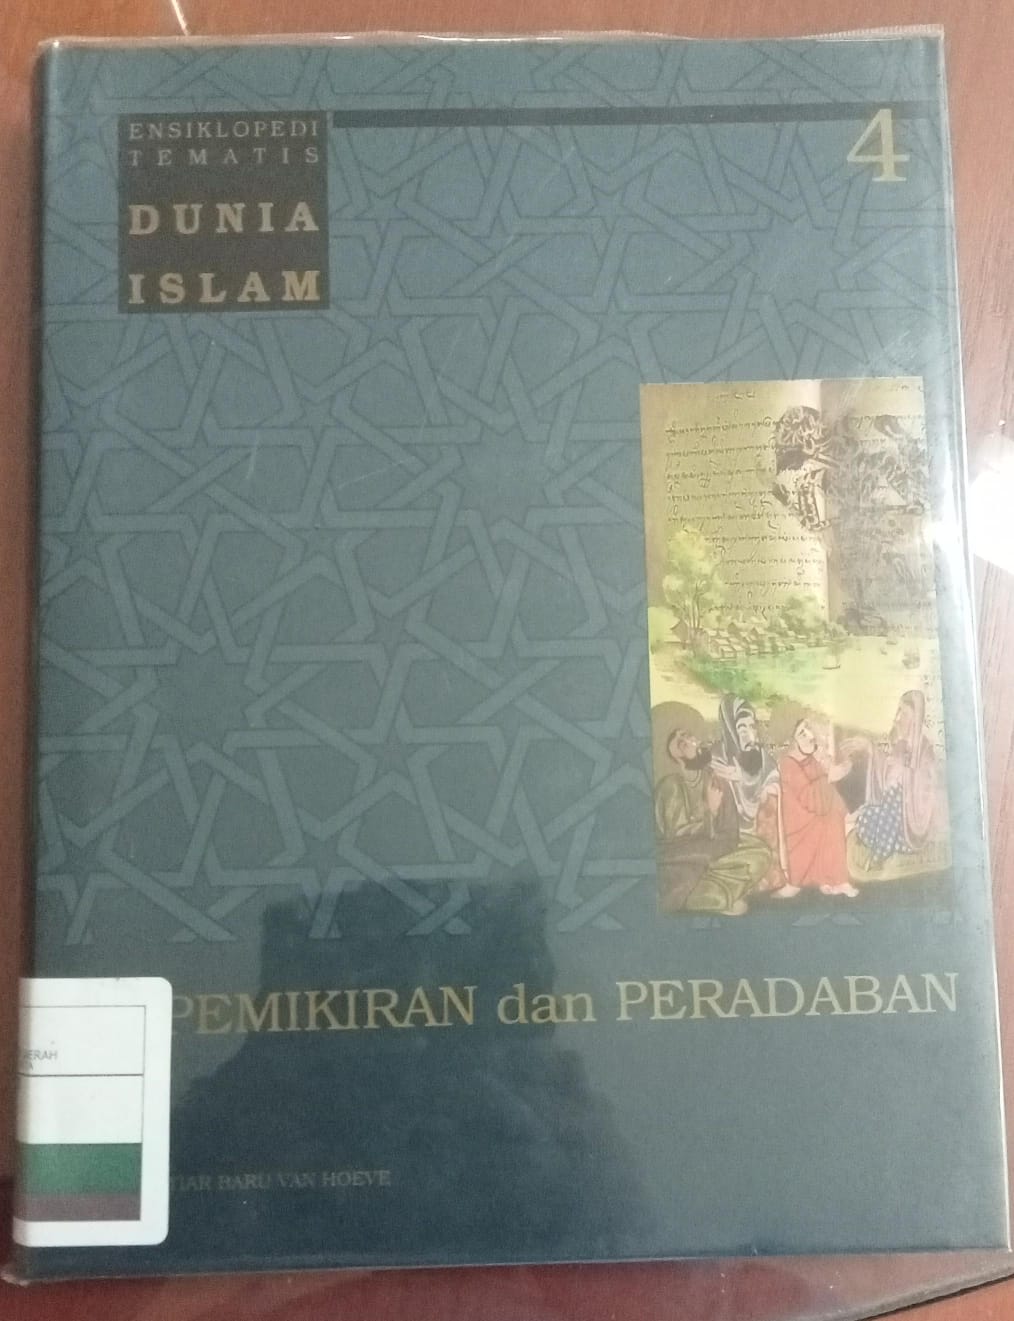 Ensiklopedi tematis dunia islam jilid 4 :  Pemikiran dan peradaban